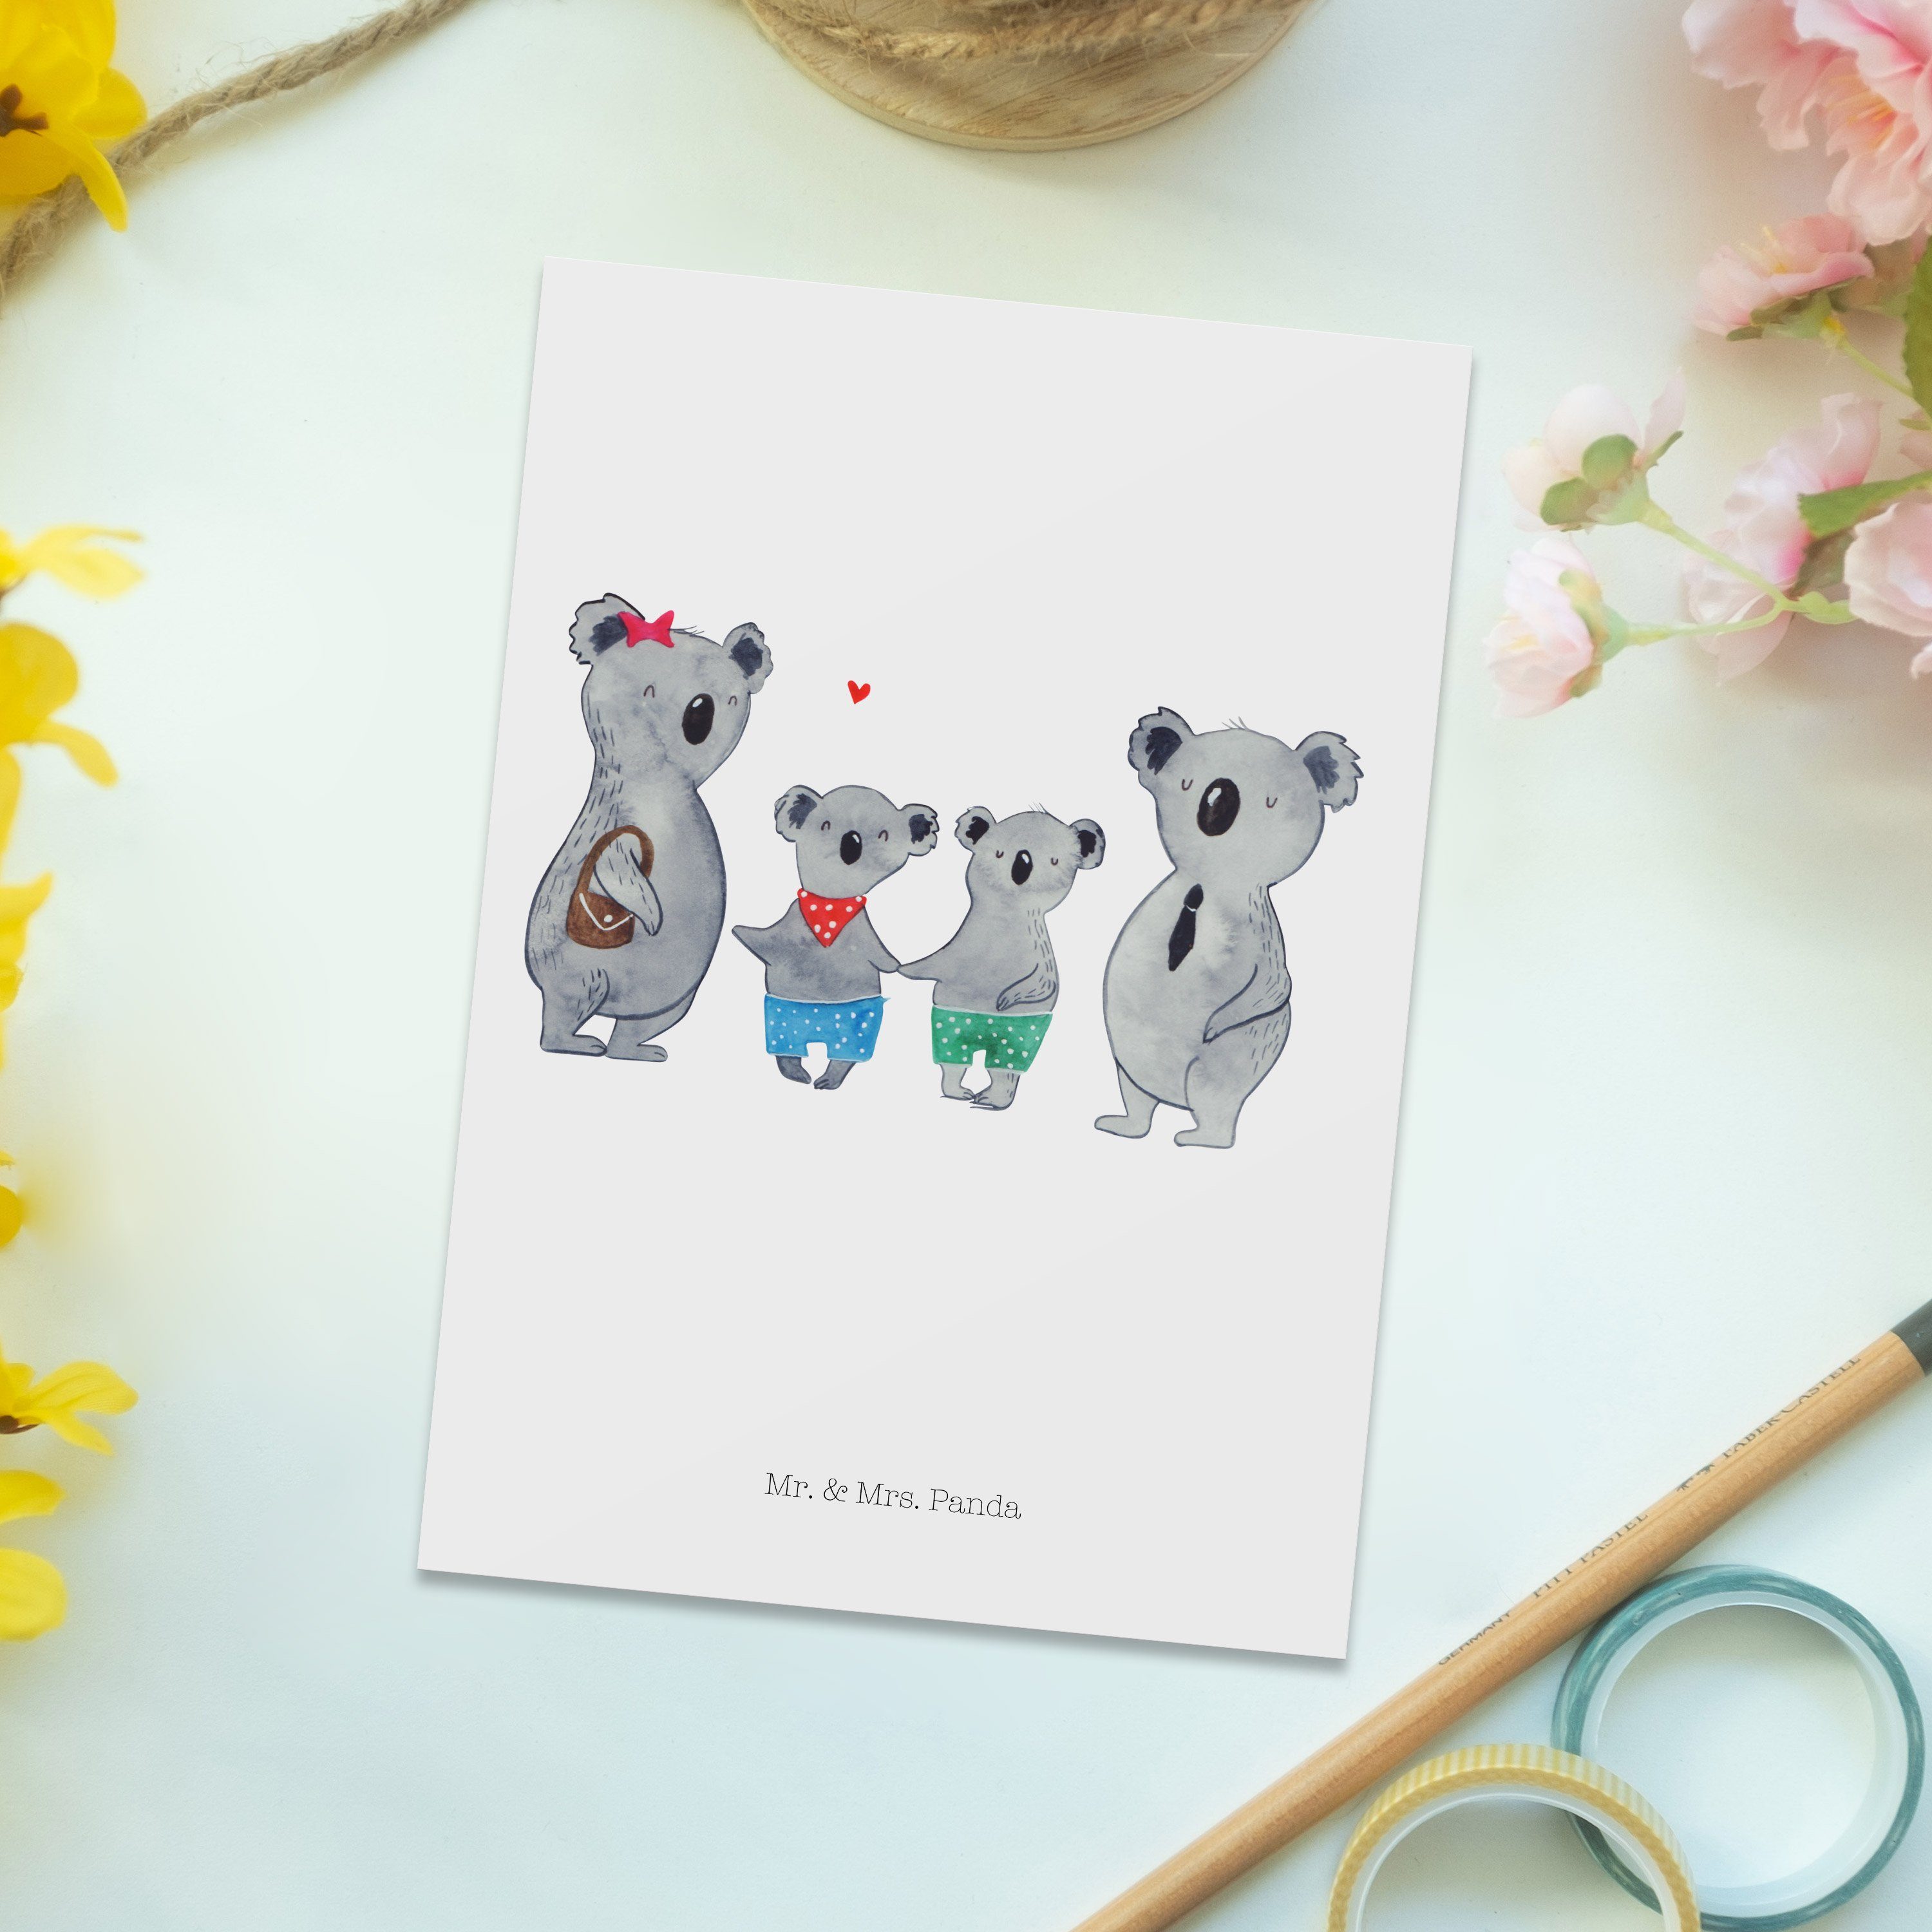 Mr. & Mrs. zwei Sch Weiß Koalabär, Geschenk, Panda Koala Postkarte Familie - Lieblingsfamilie, 